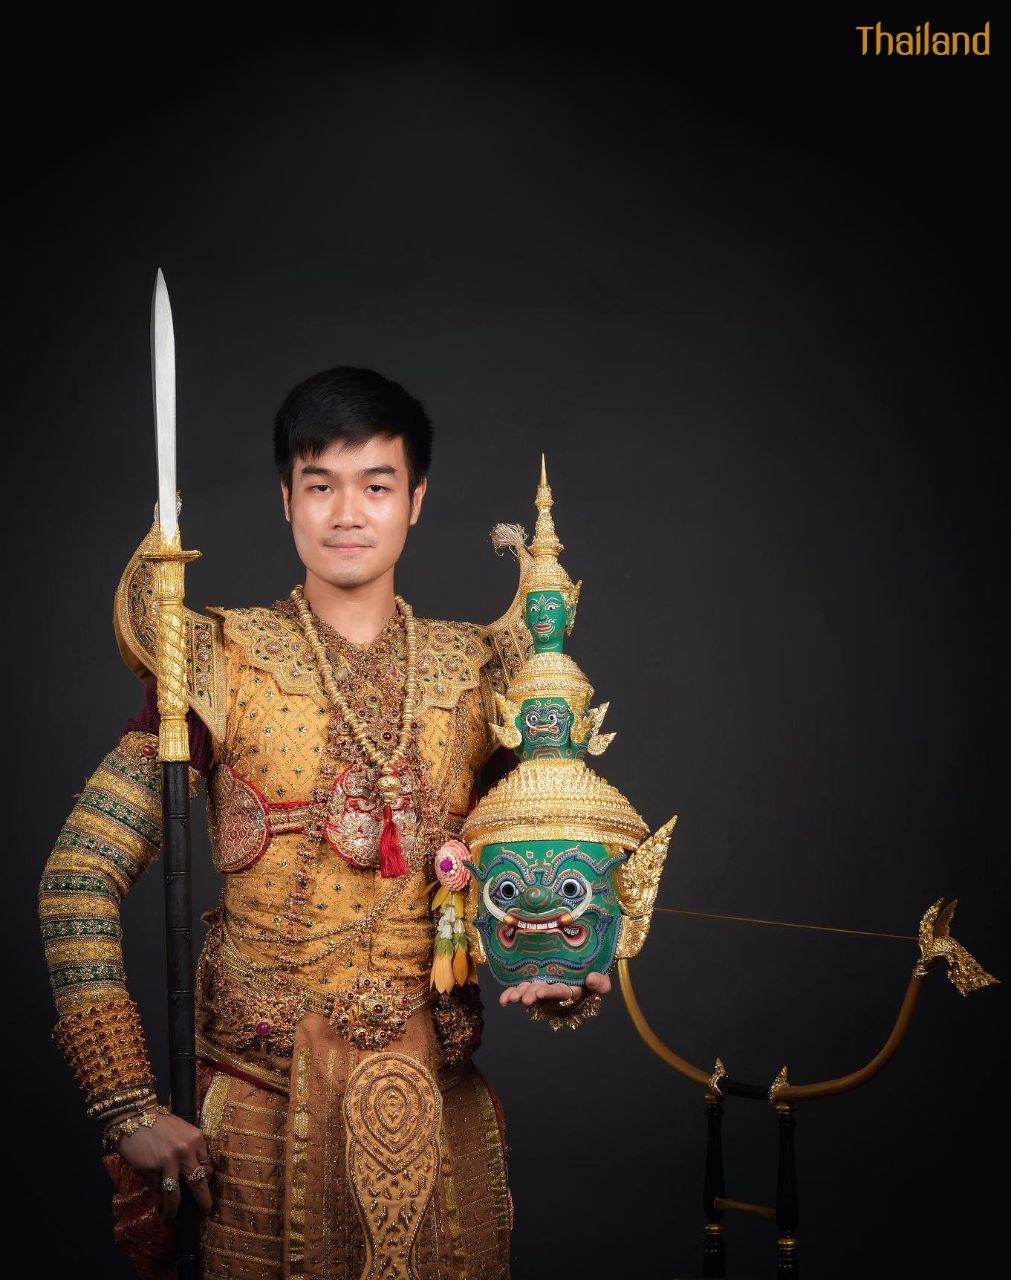 “รำลงสรงโทนท้าวกรุงพาณ” Khon masked dance drama in Thailand | THAILAND 🇹🇭